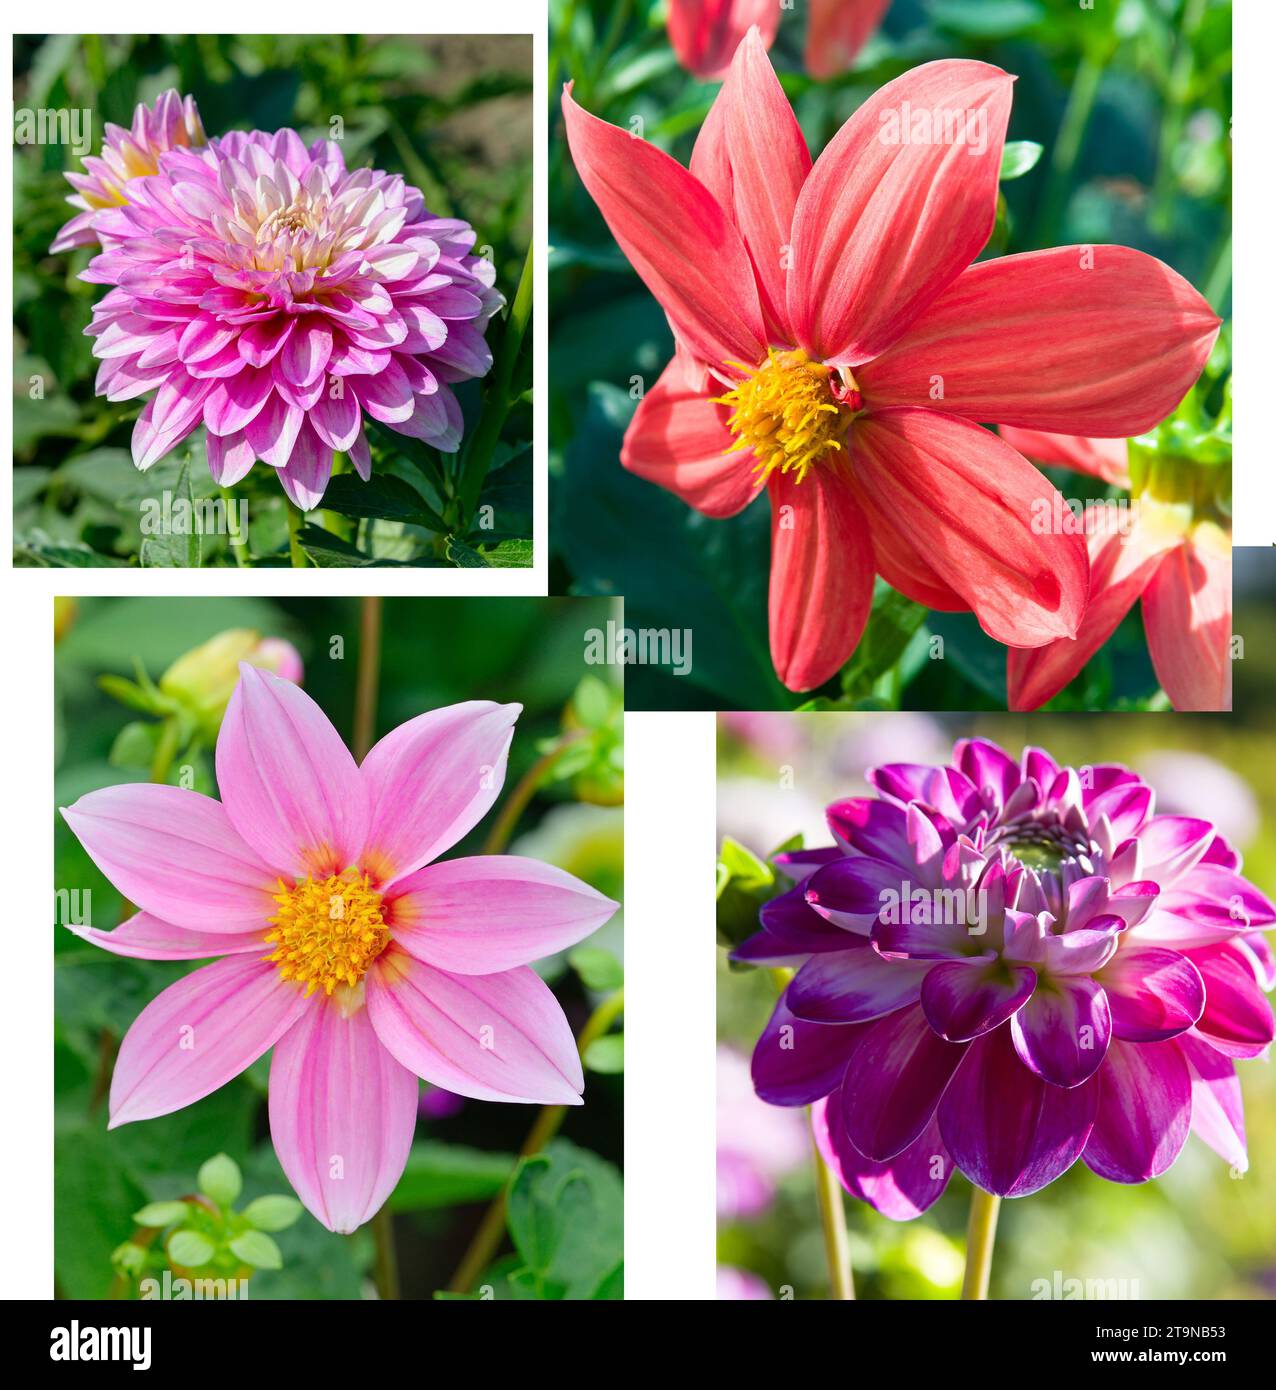 Collage von Fotos von Dahlienblüten. Stockfoto